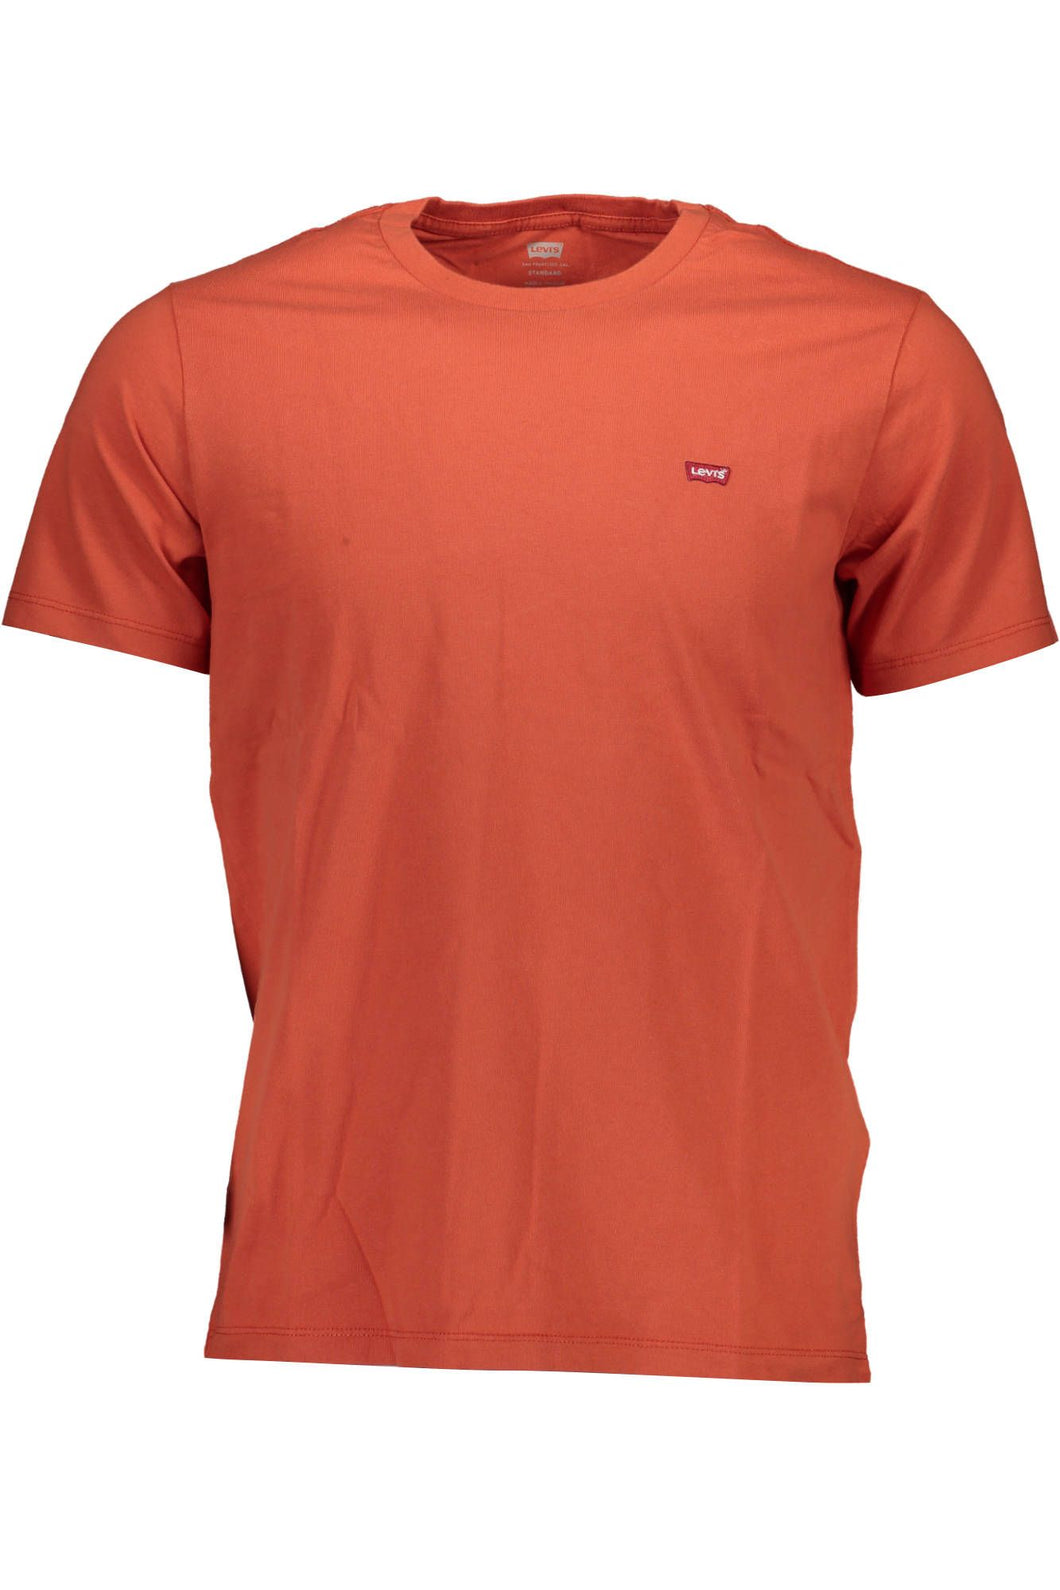 Levi's Orange Cotton T-Shirt